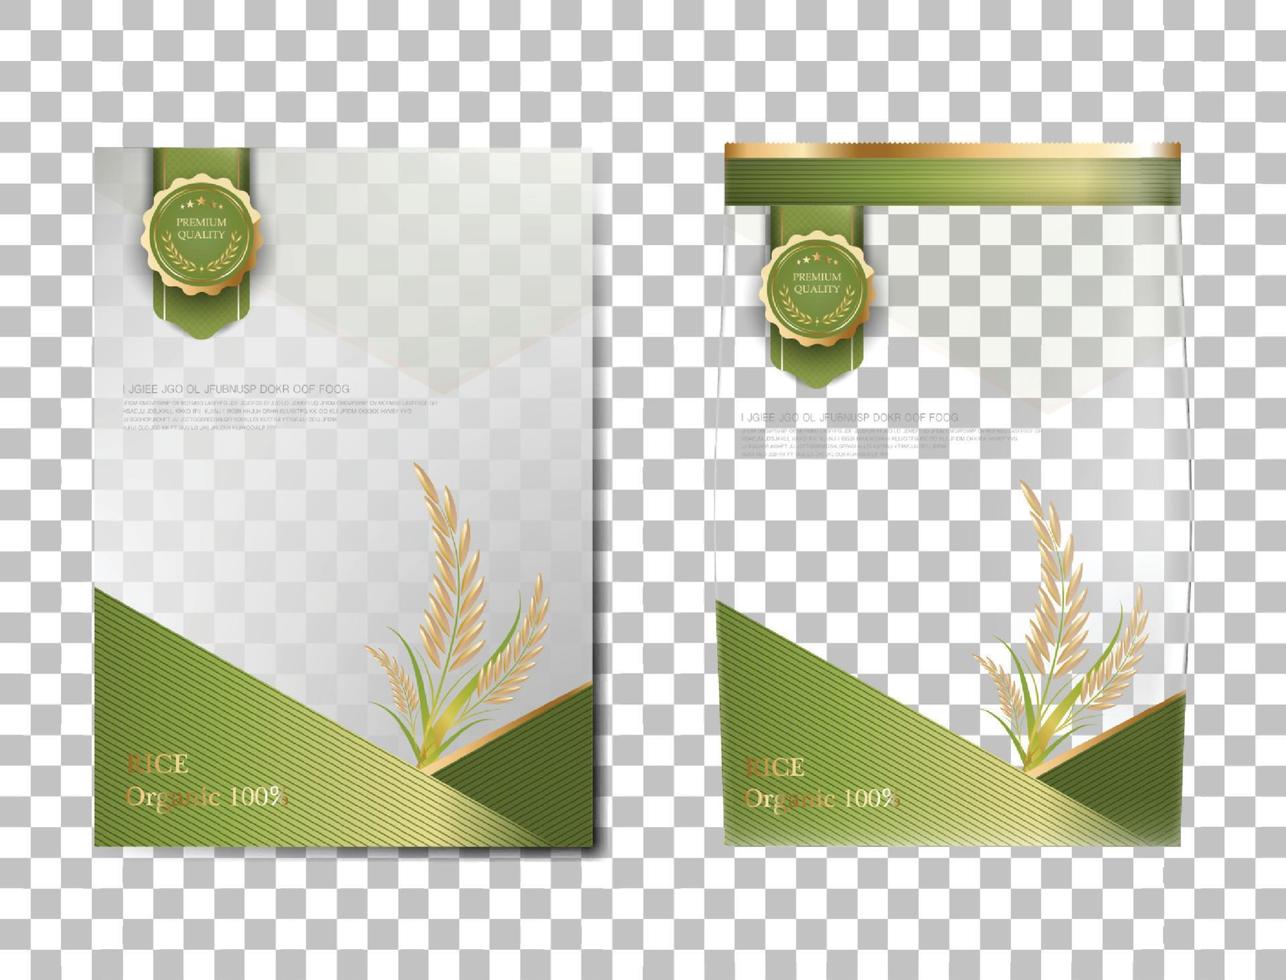 paquete de arroz productos alimenticios de tailandia, pancarta de oro verde y diseño de vector de plantilla de póster arroz.